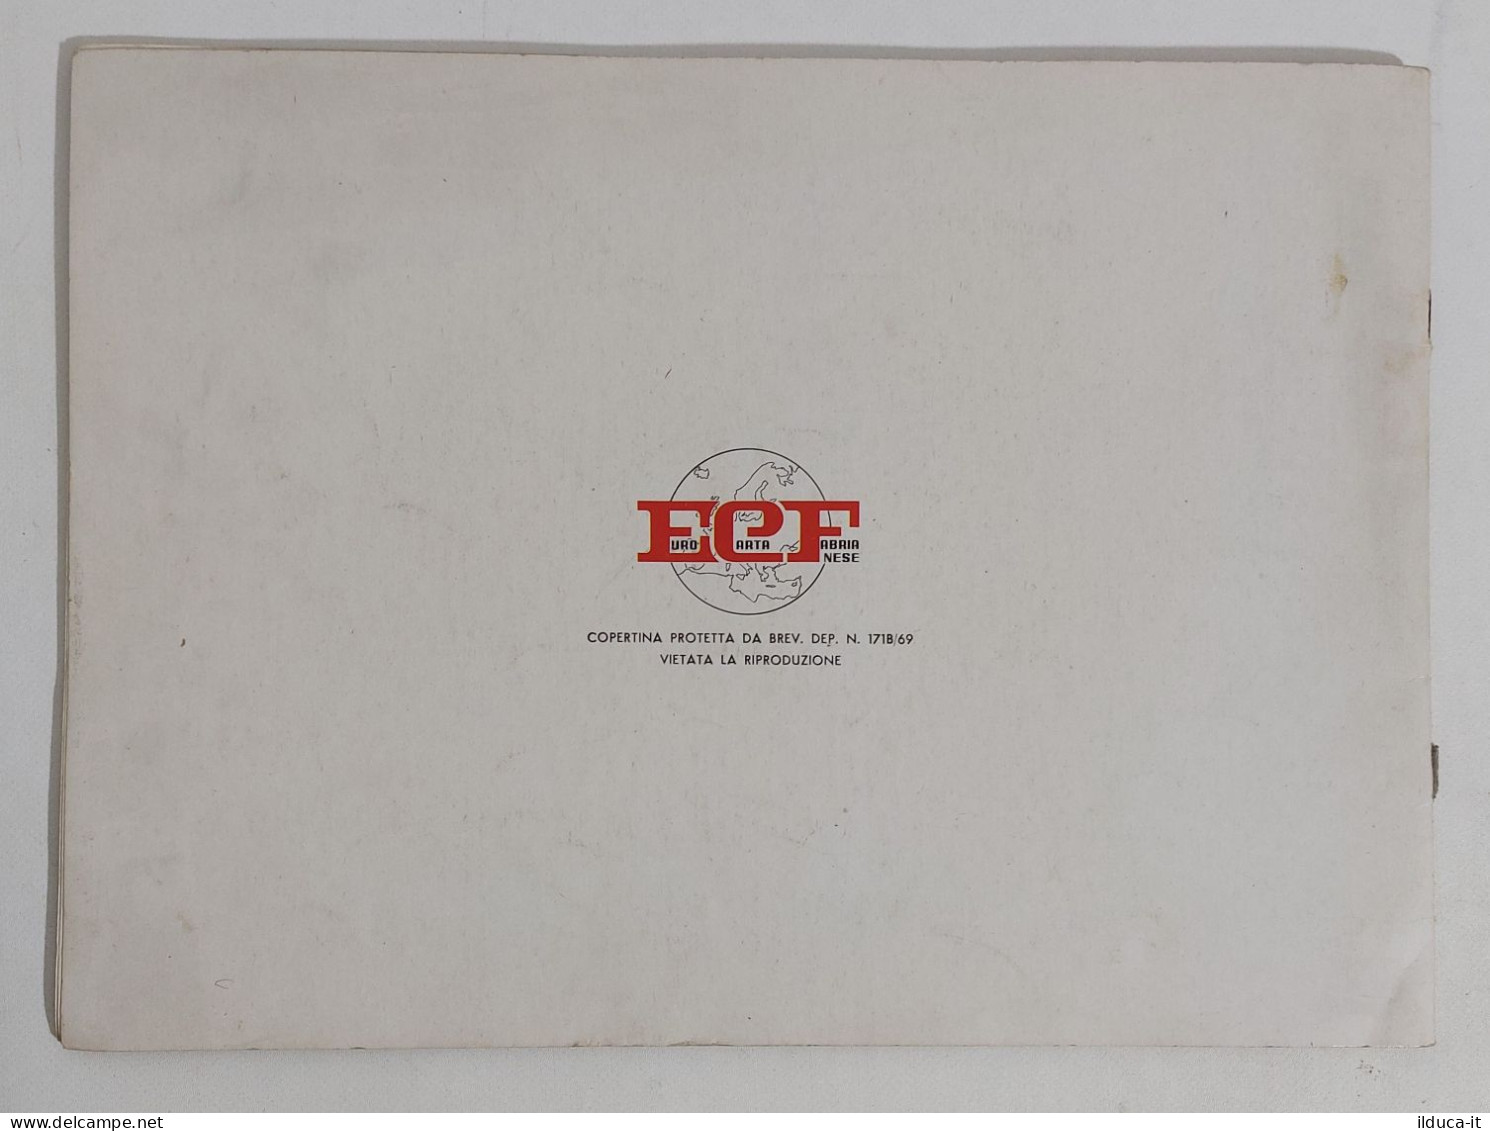 69805 Album Da Disegno Geometrico Vintage Arcobaleno - ECF - Matériel Et Accessoires